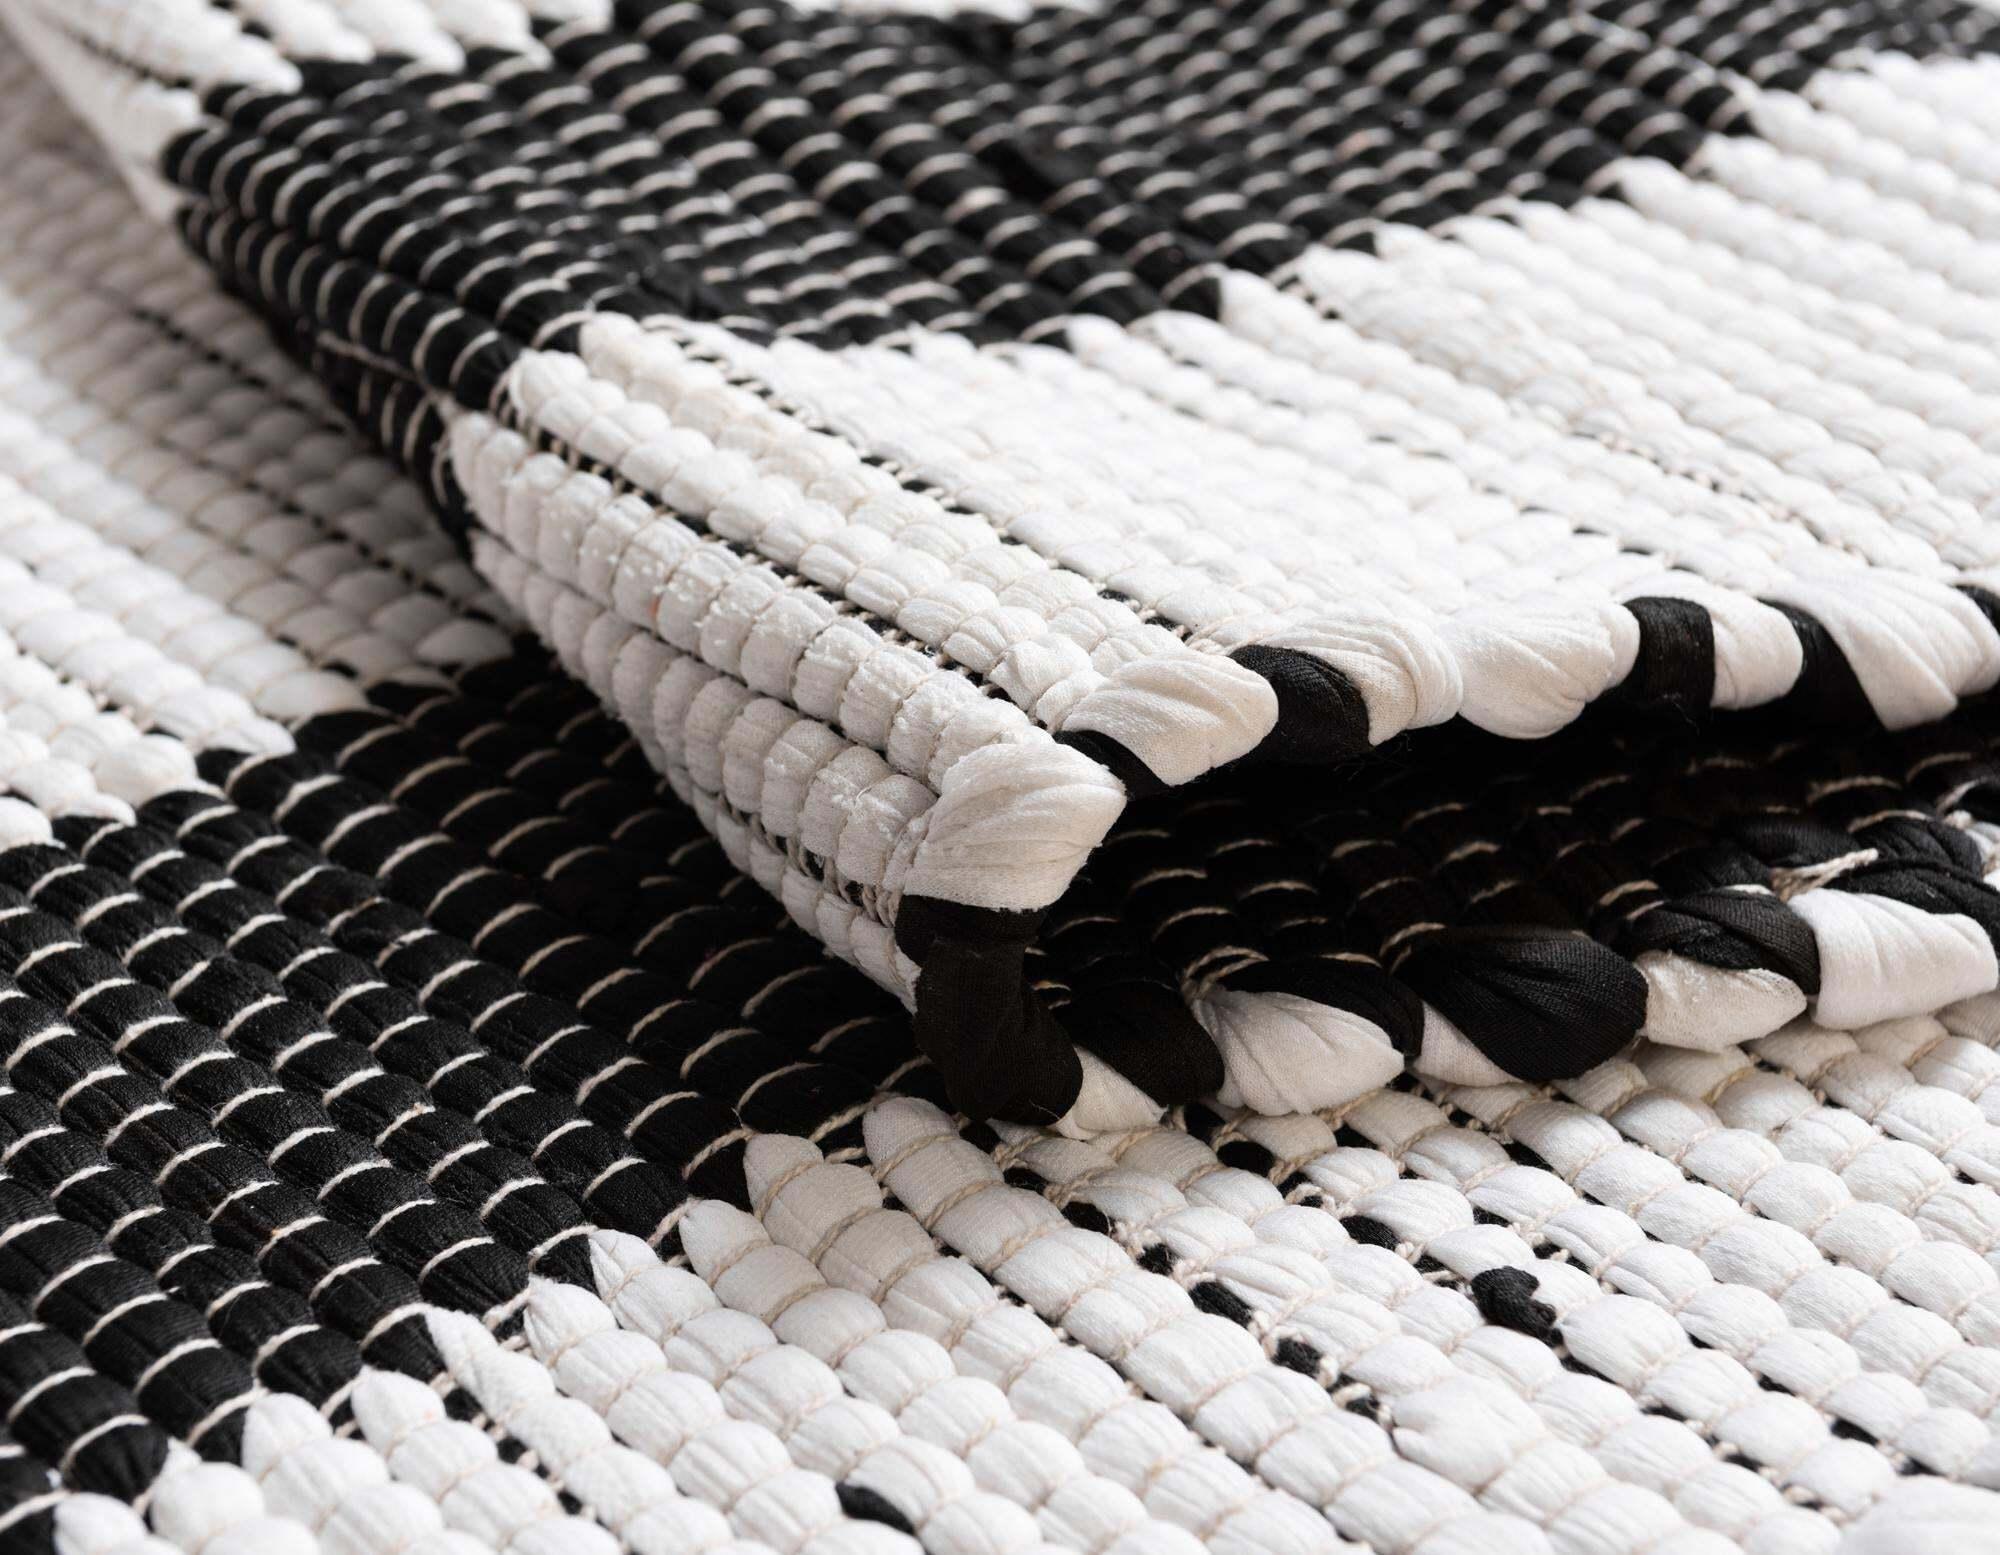 Unique Loom Indoor Rugs - Chindi Jute Border Rectangular 8x11 Rug White & Black